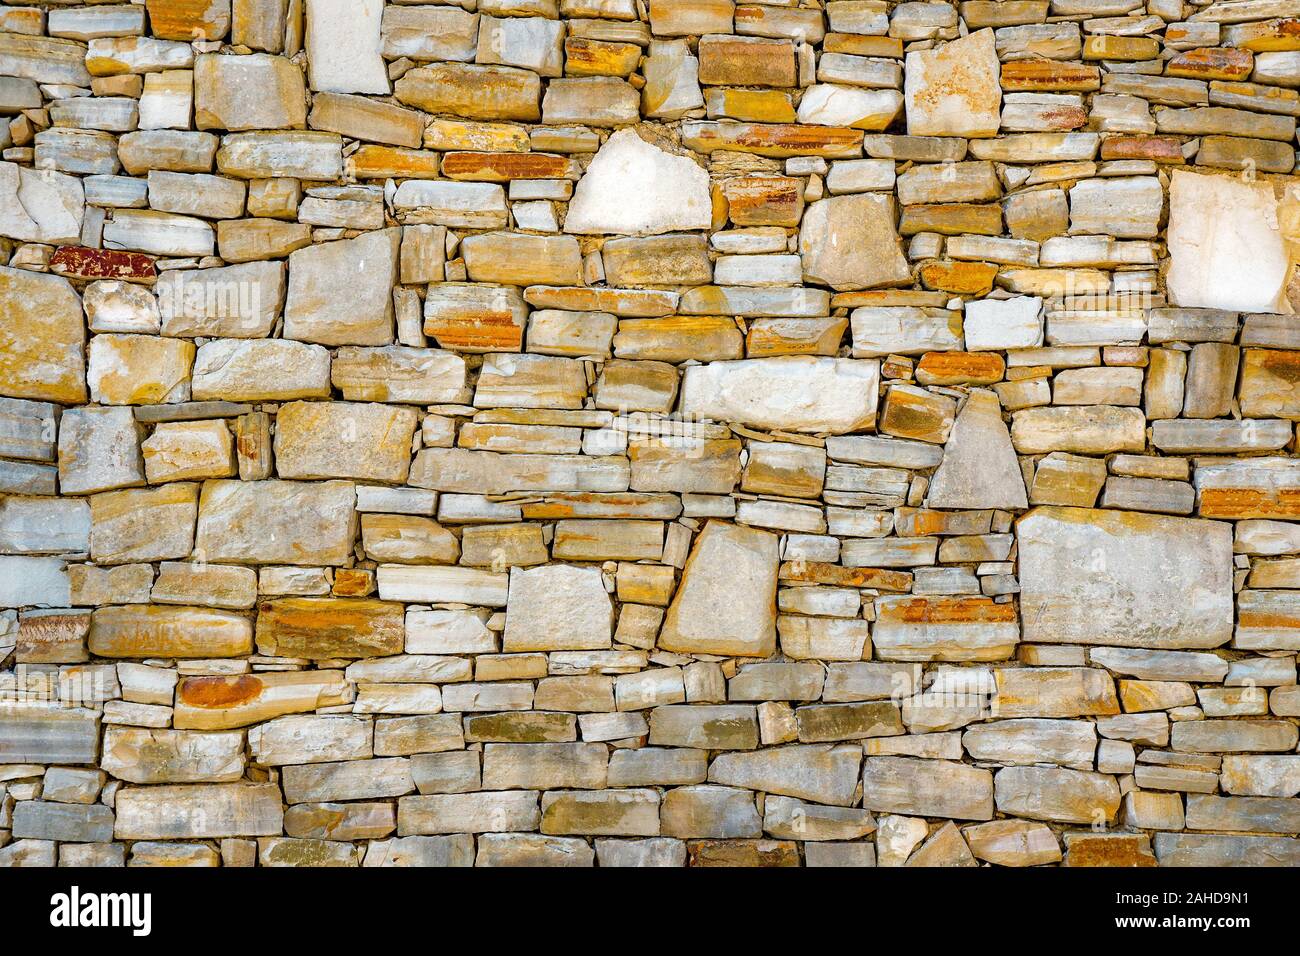 Mur de pierres comme une texture. Mur de pierre. Mur de pierres. mur d'une forteresse médiévale avec principalement blancs ou de pierres colorées de différentes tailles et formes, utilisables comme motif de fond ou pour les dessins et modèles Banque D'Images